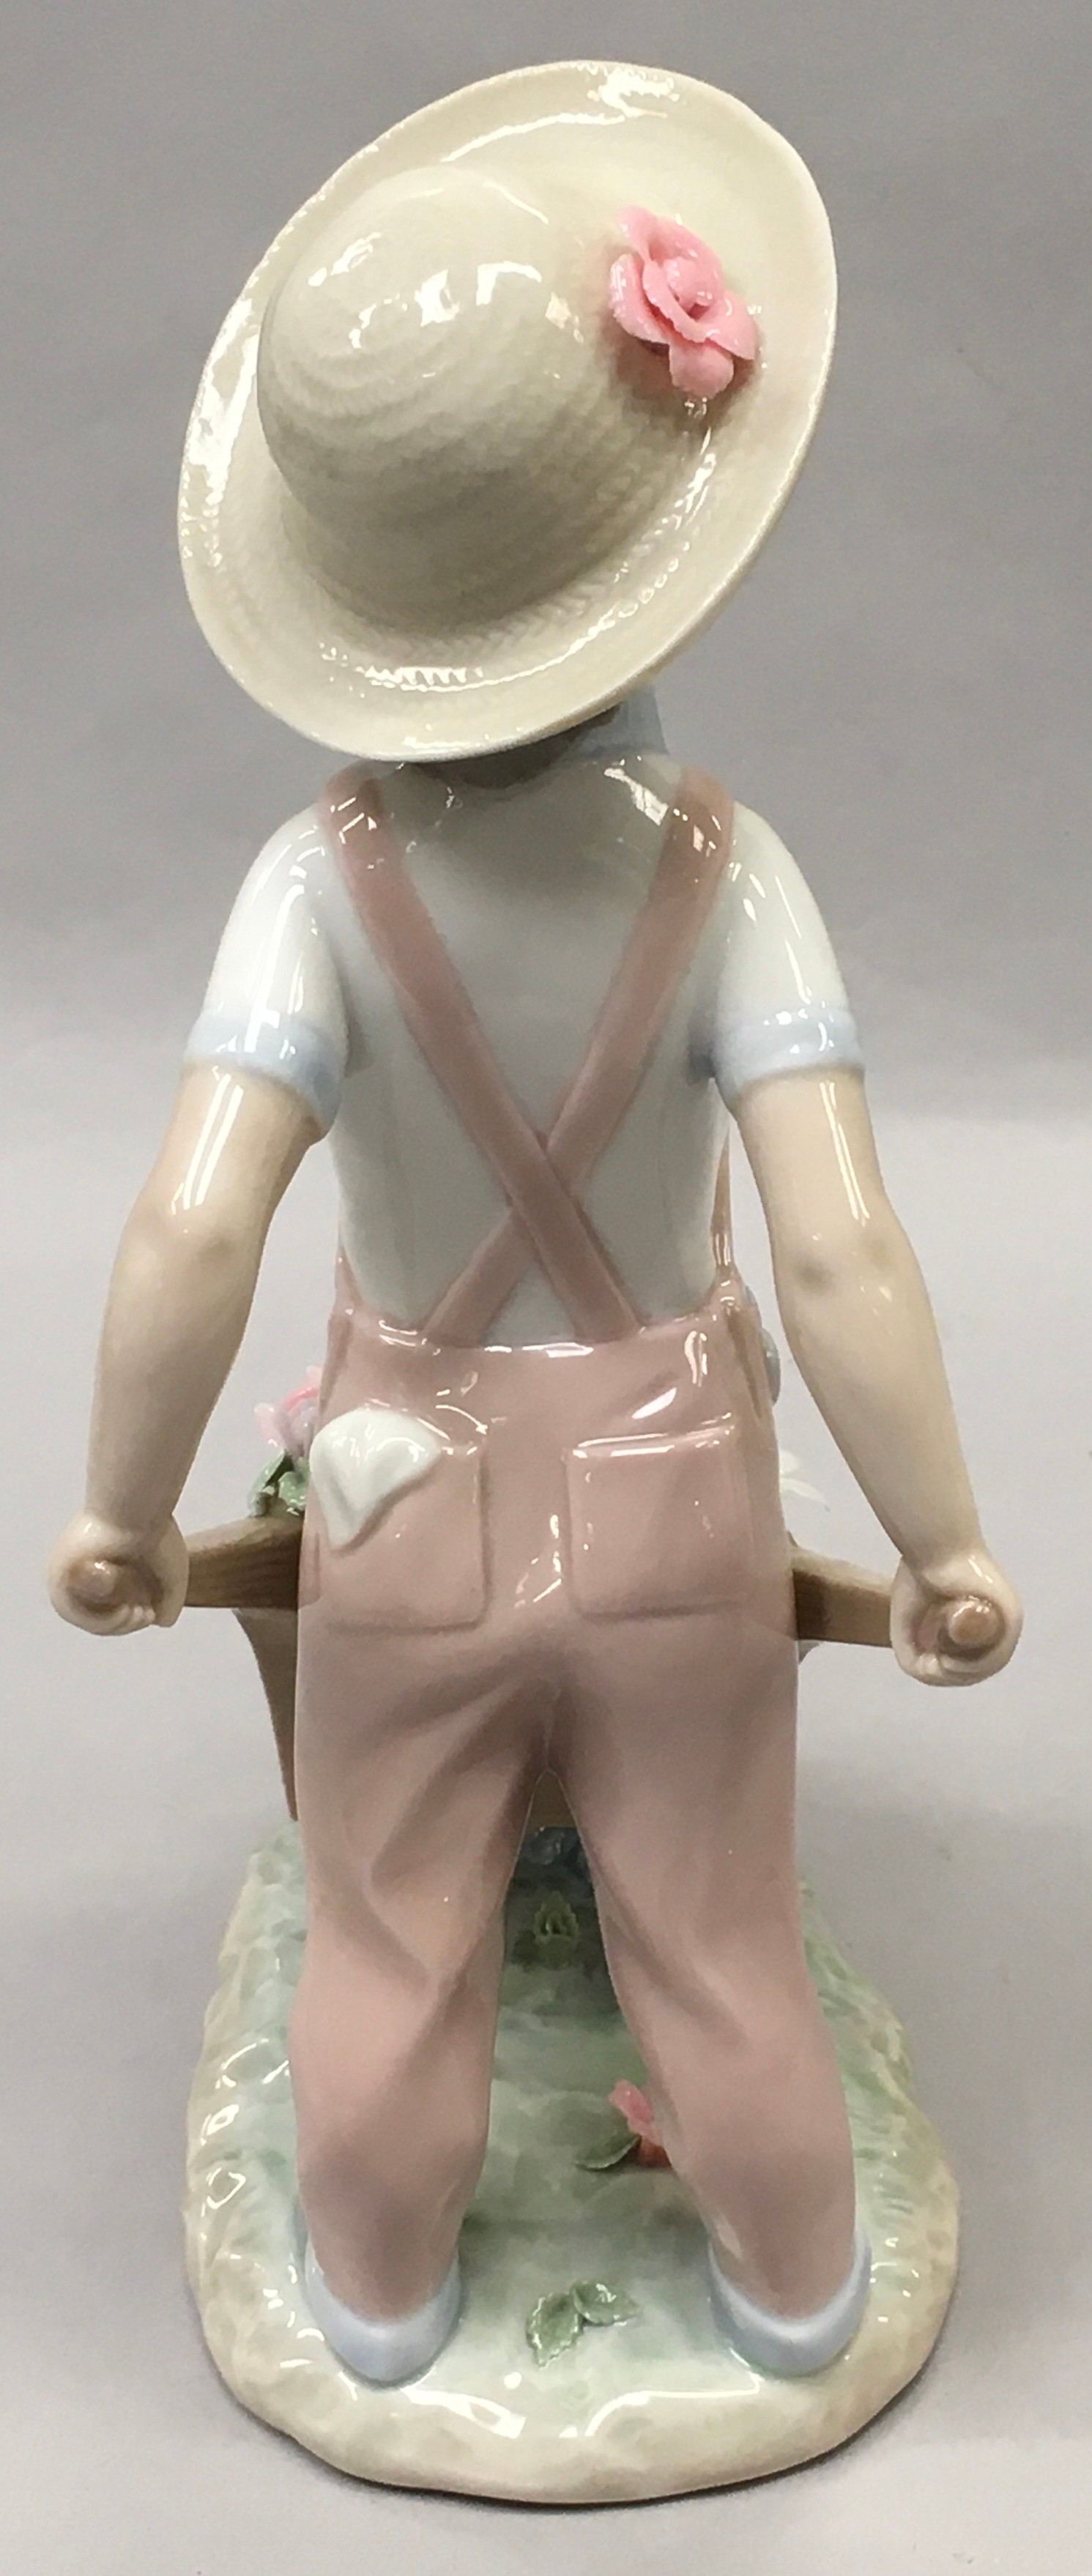 Lladro "1283" Little Gardener porcelain figure. - Image 3 of 5